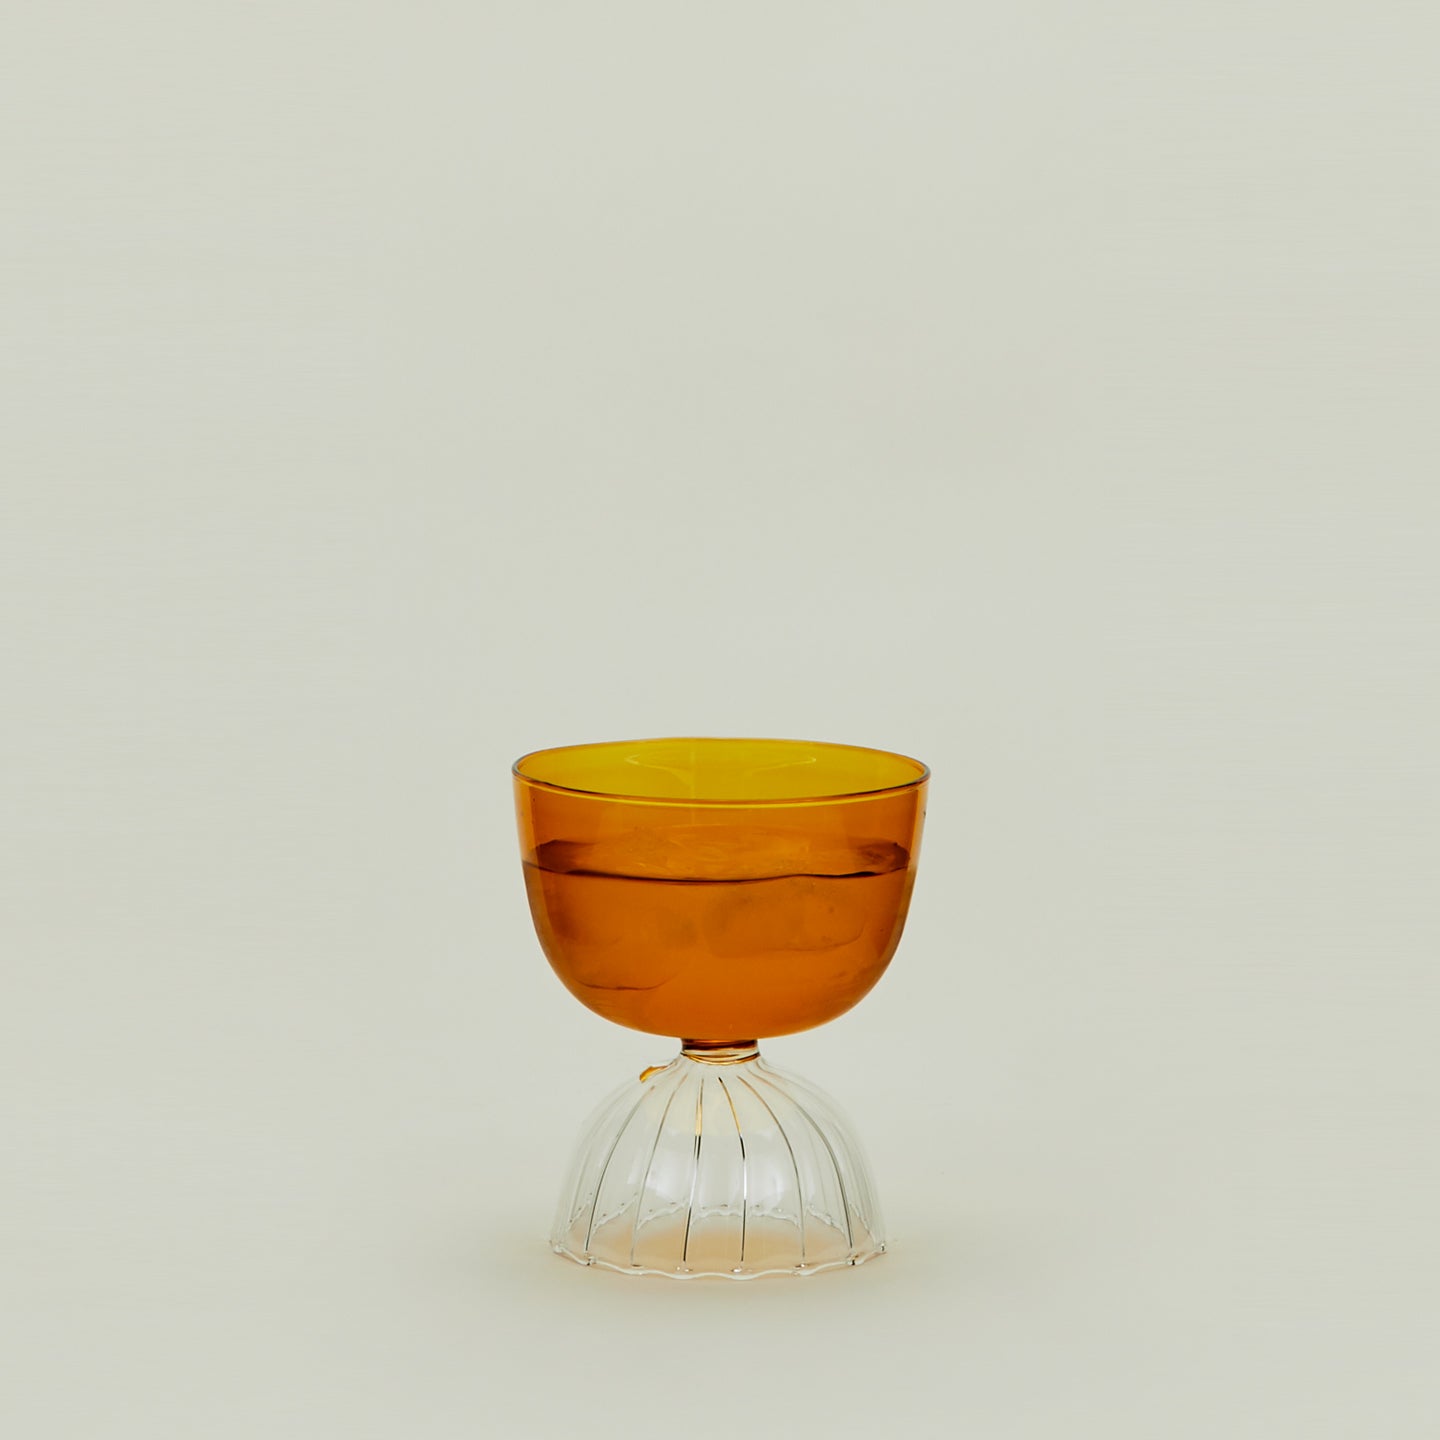 Tutu Glass in Amber